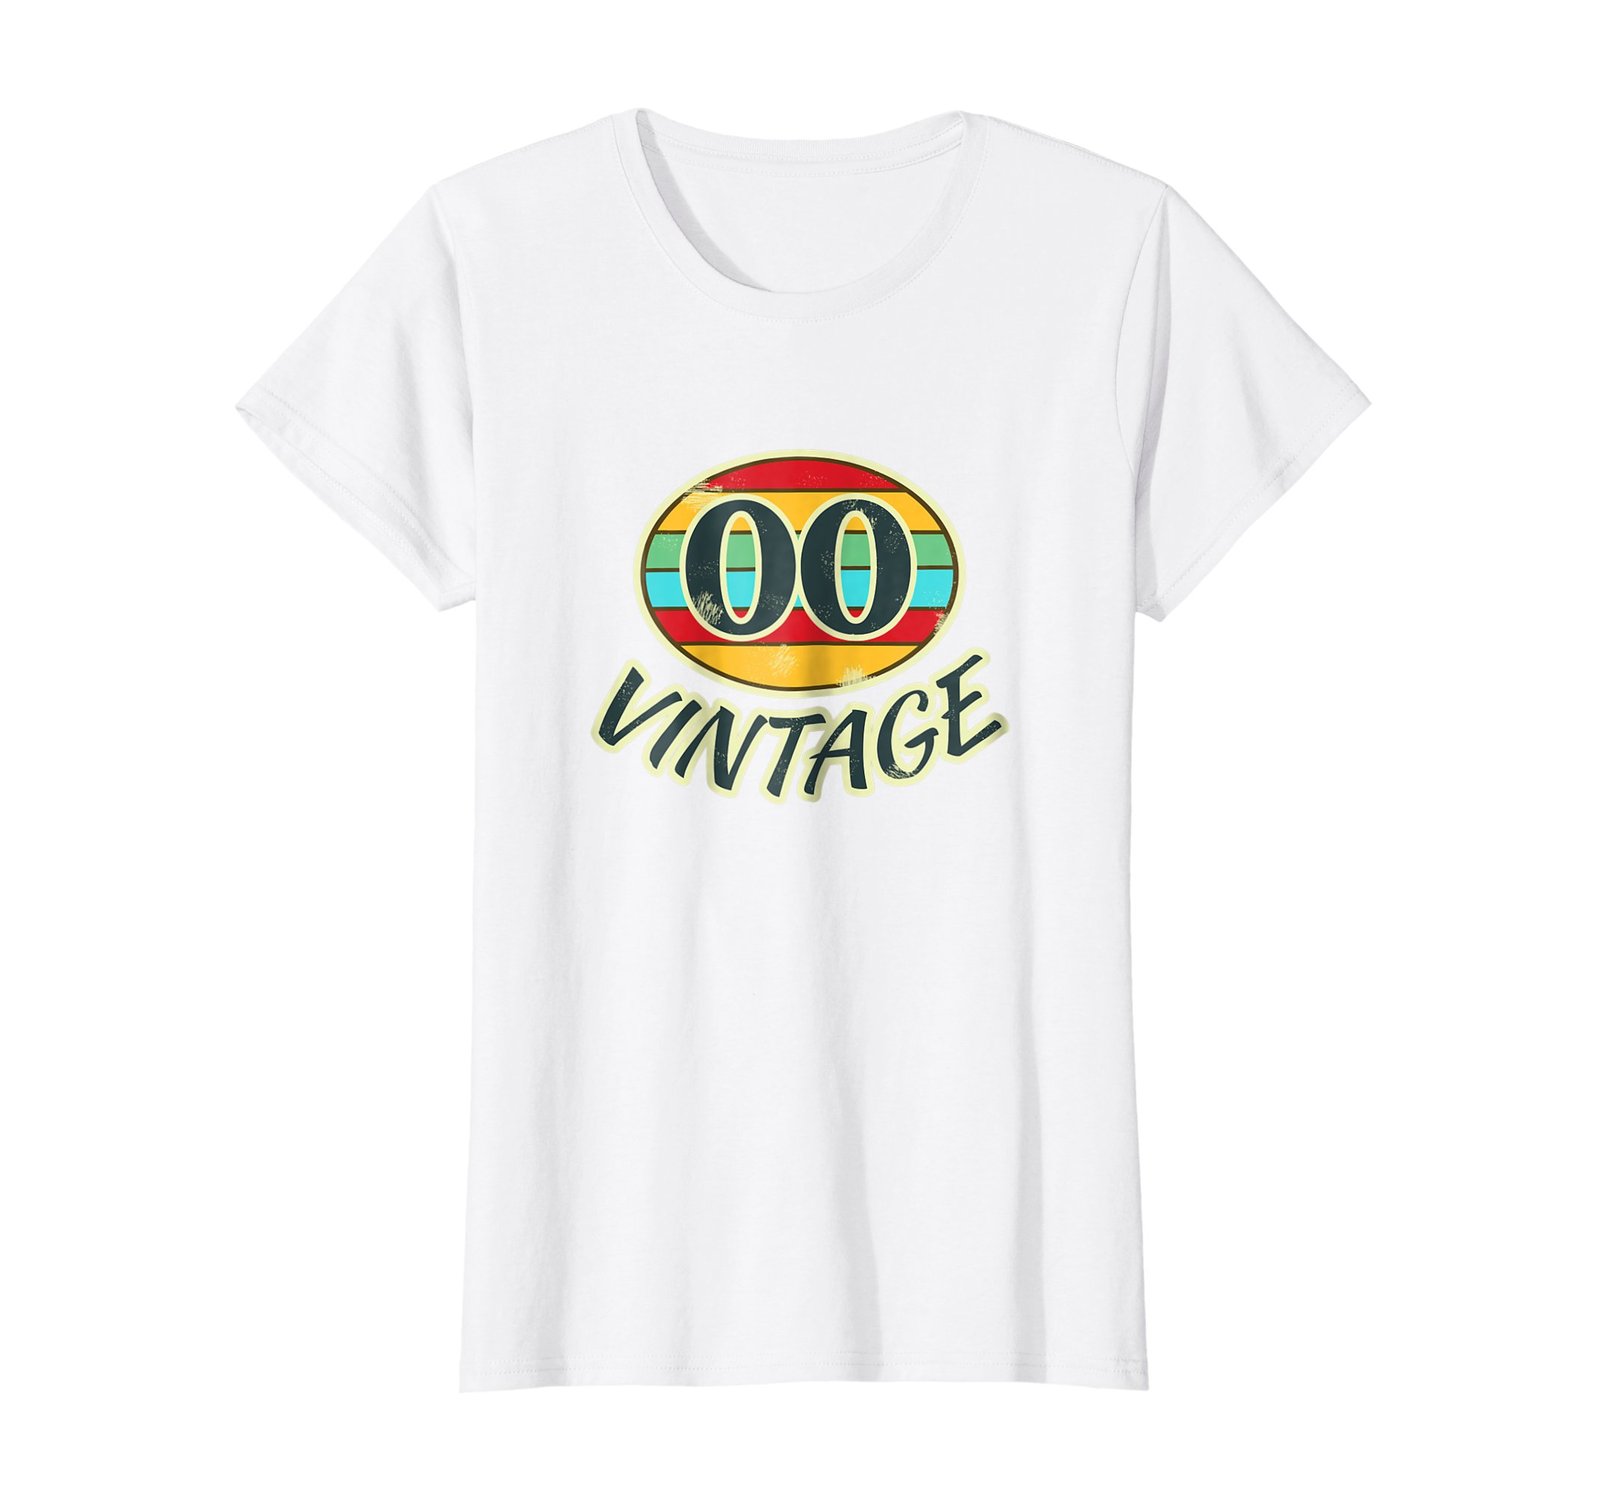 Funny Shirts - DOB 2000 TShirt Vintage Retro 00 Birth Year Tee Shirt Wowen